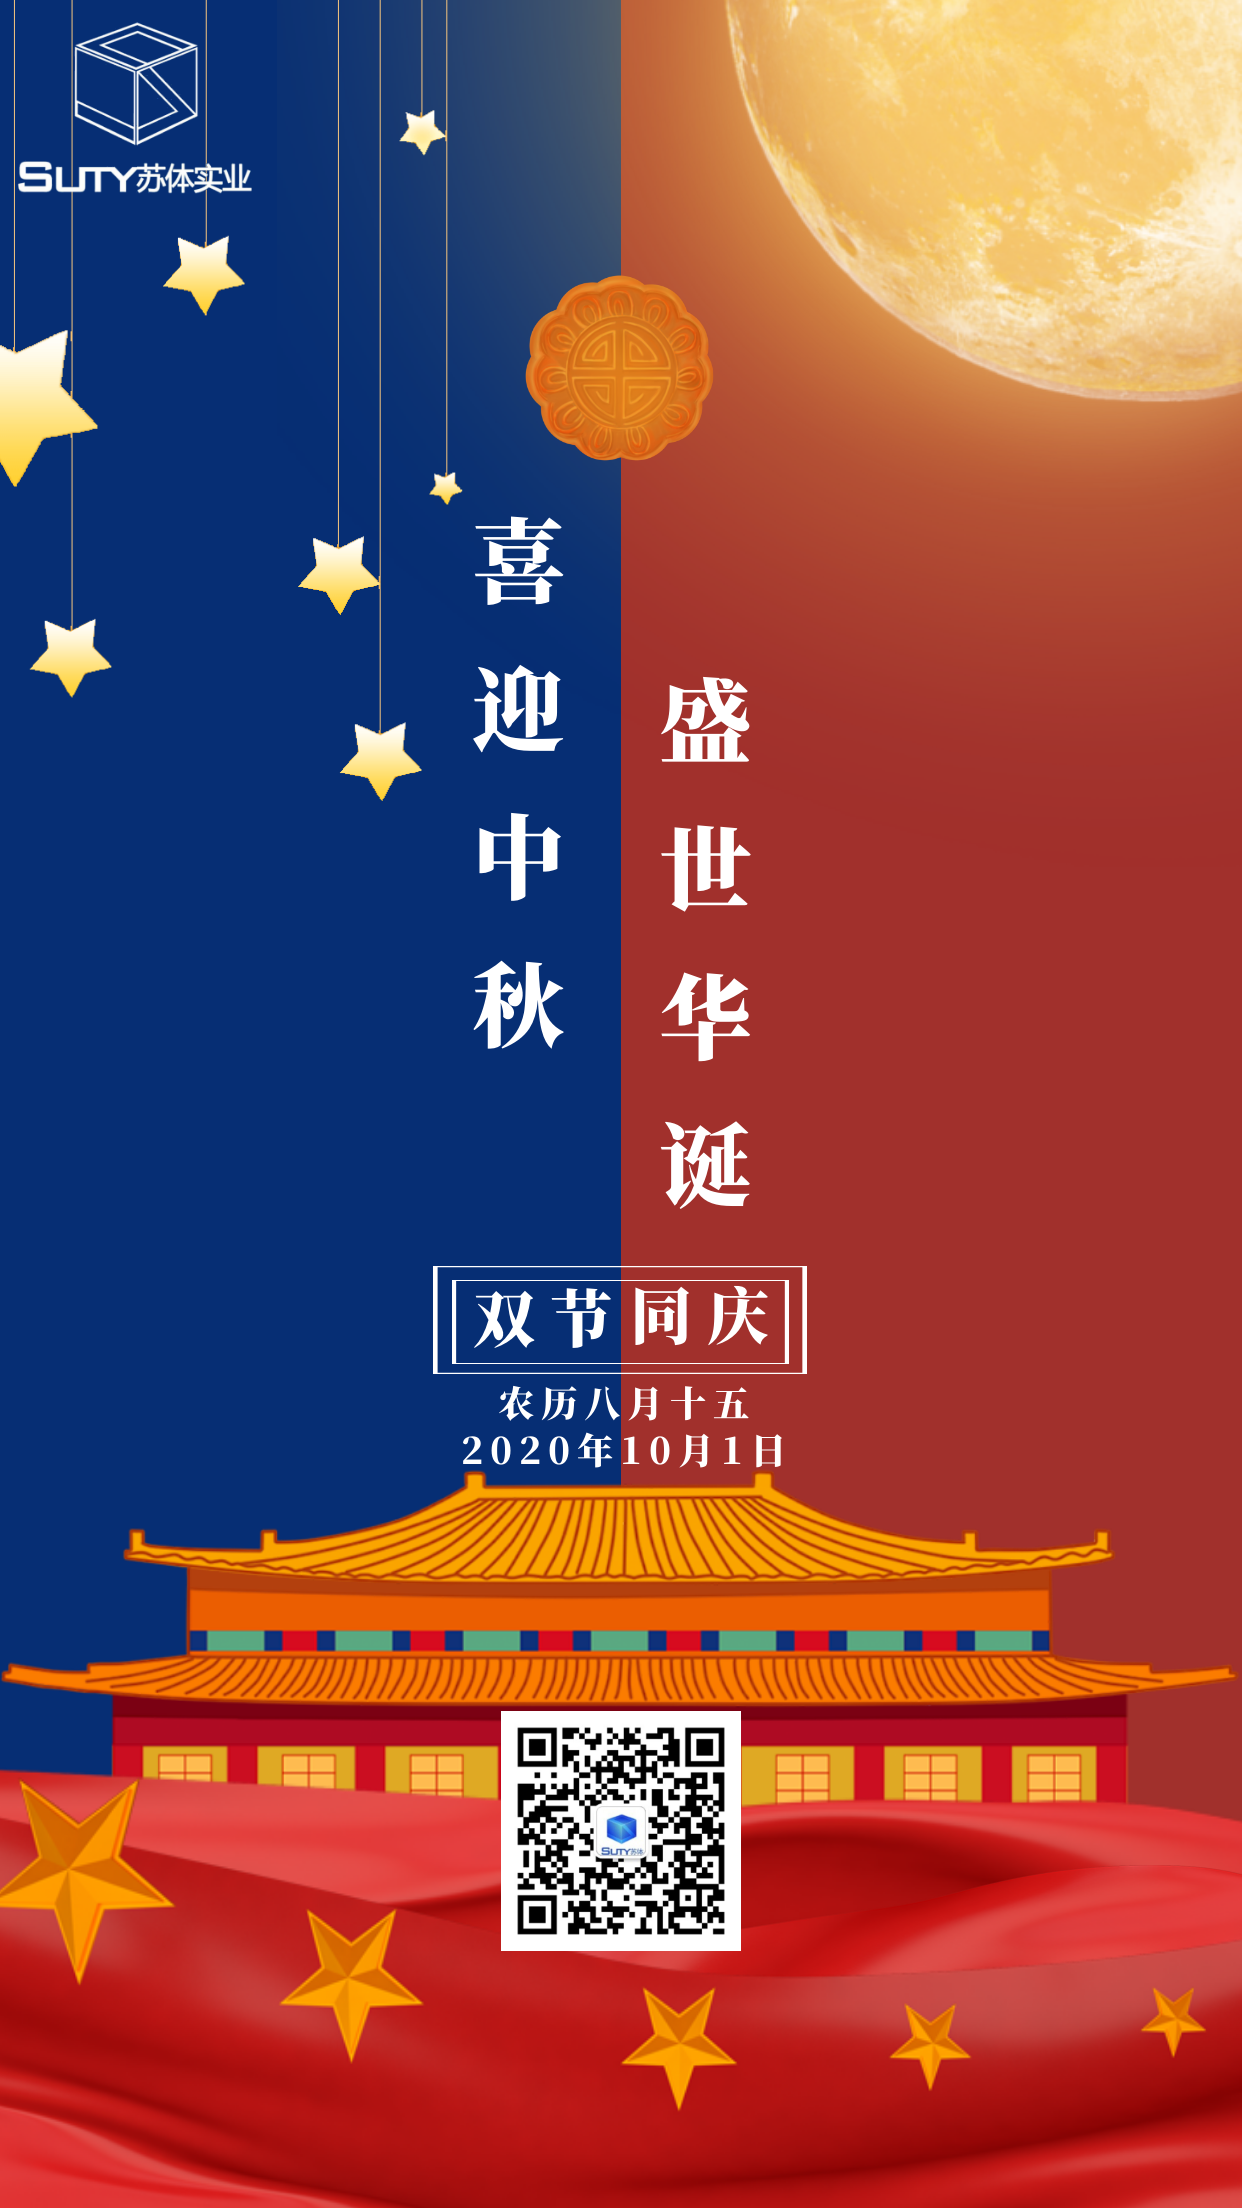 热烈庆祝中华人民共和国成立71周年！